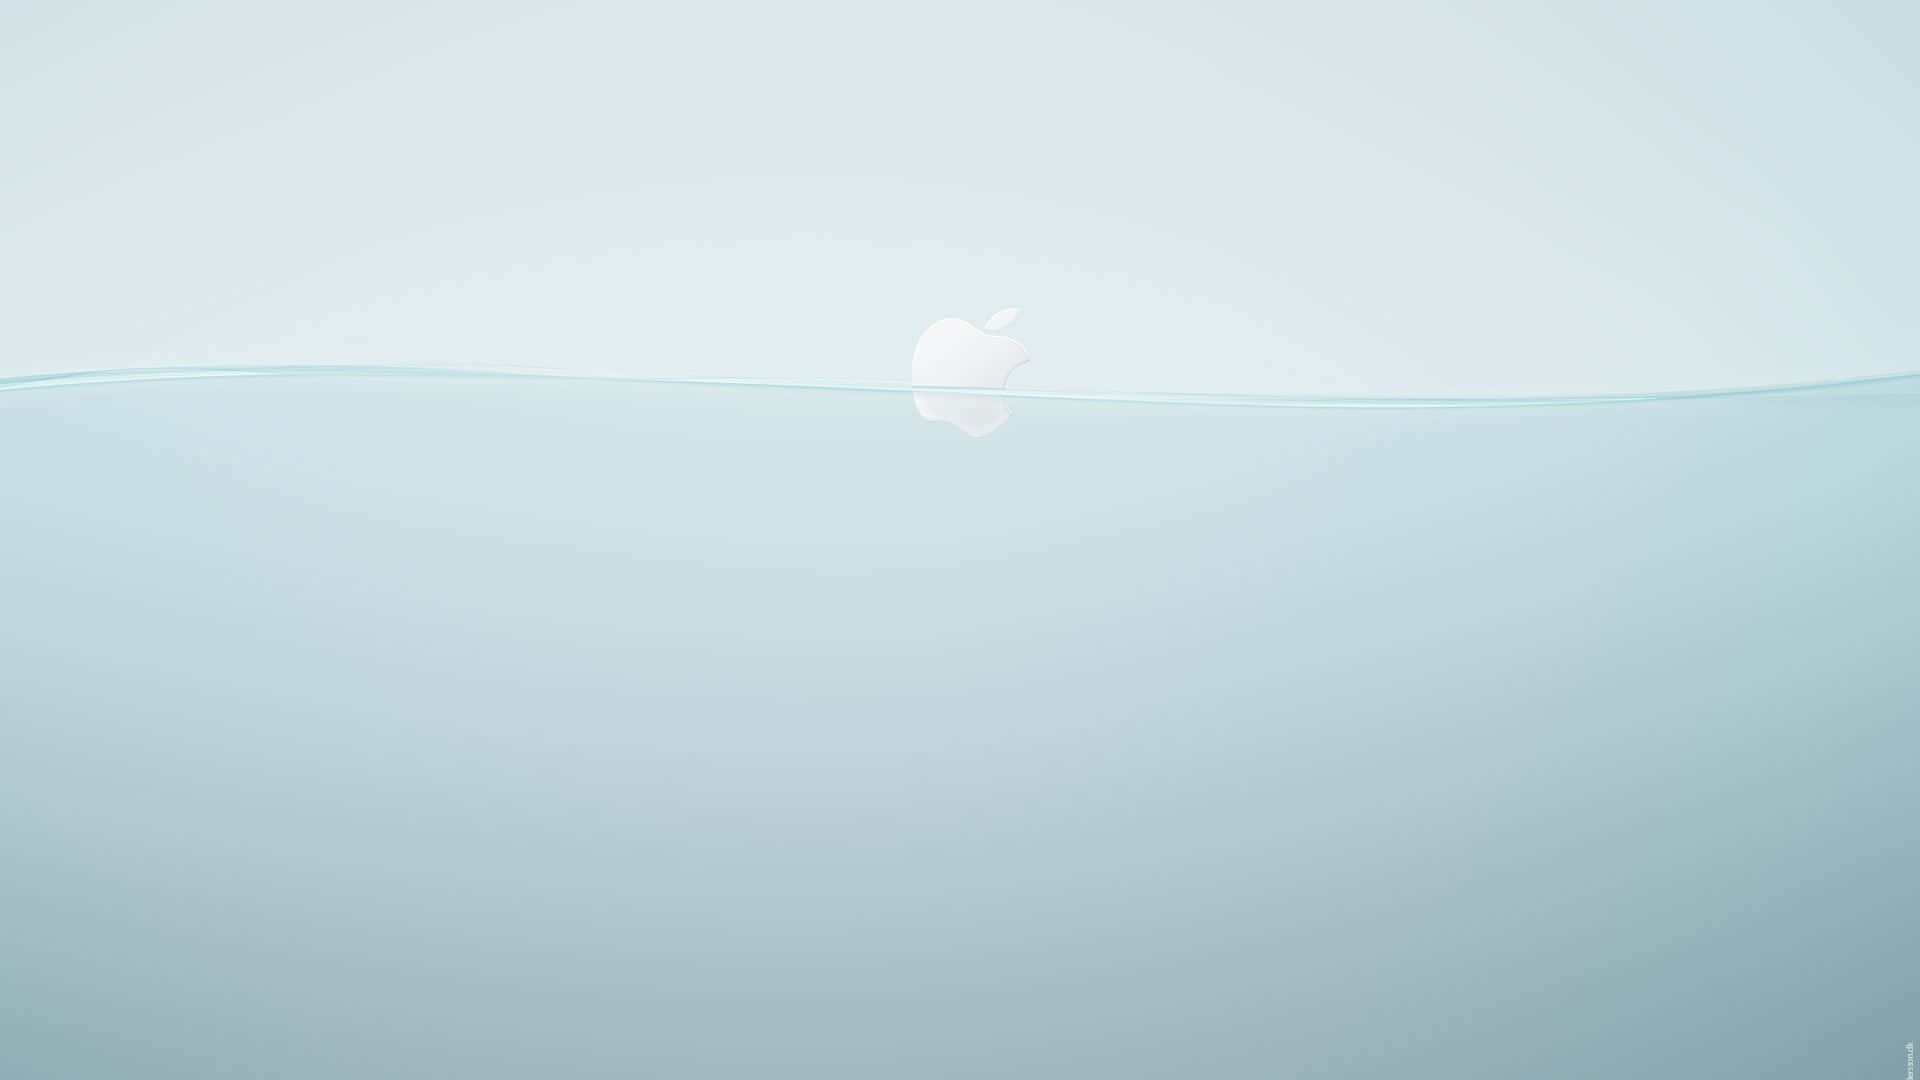 Applelogo, Das Im Wasser Schwebt